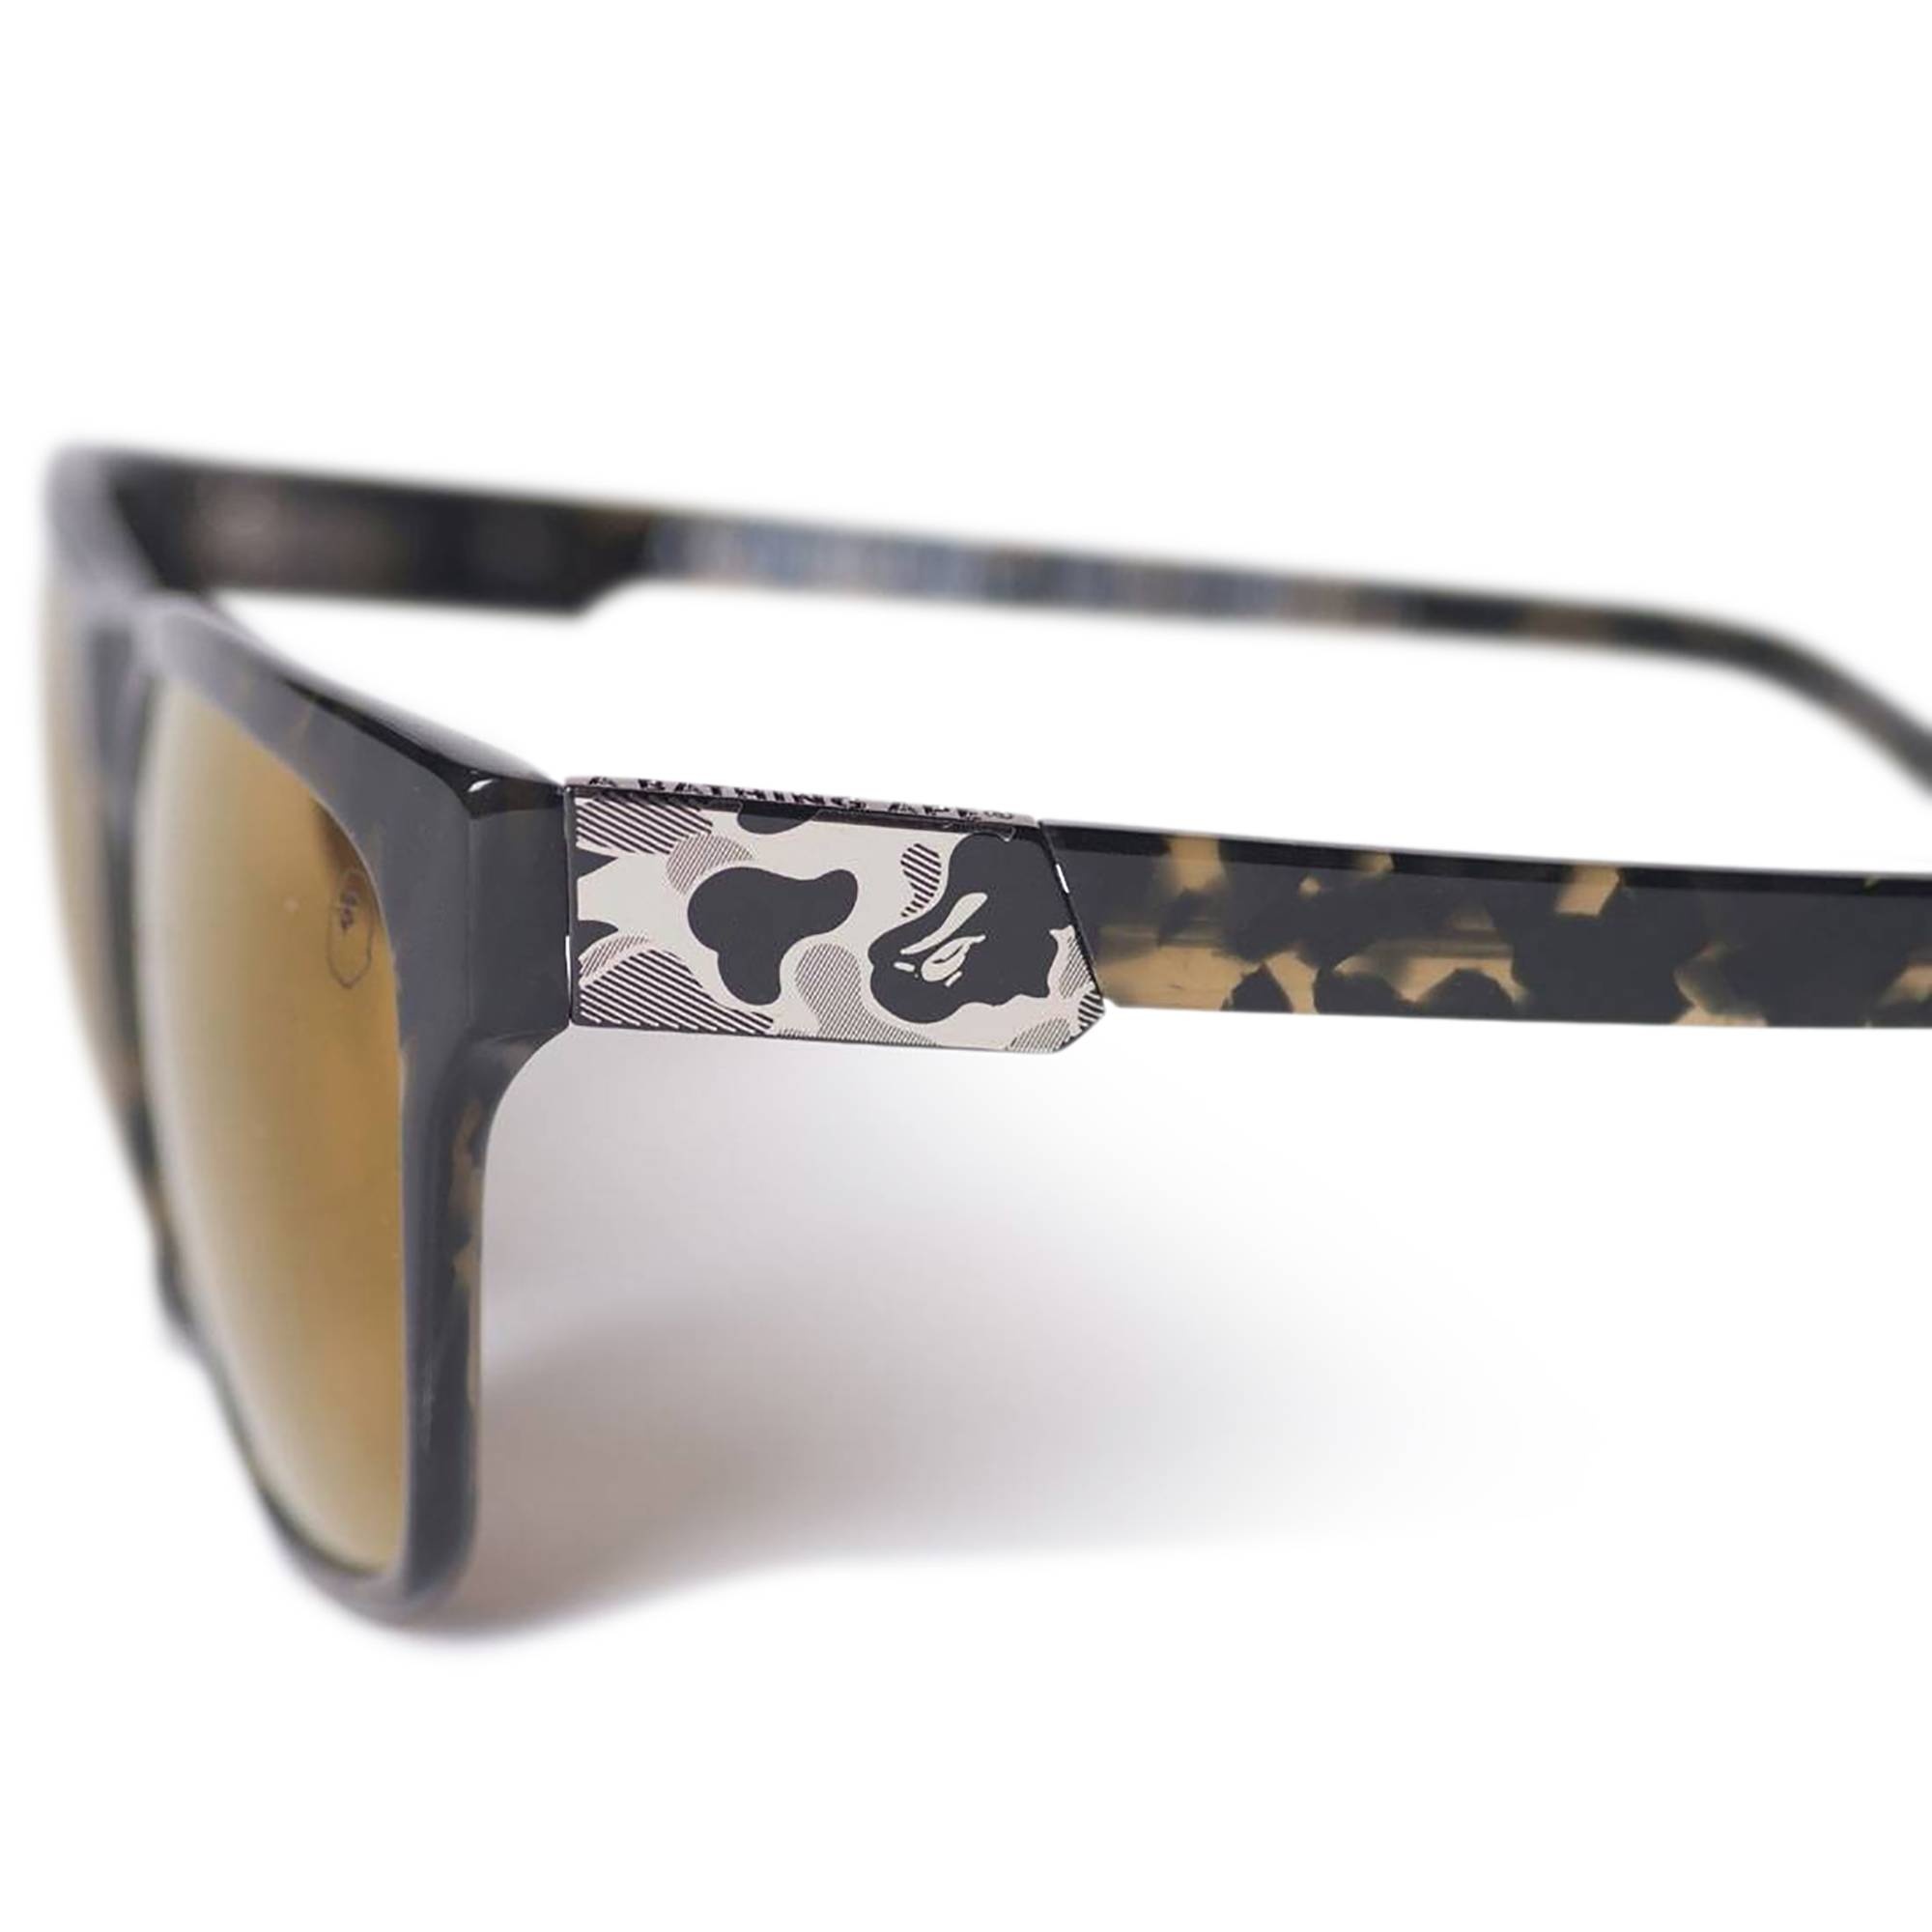 BAPE CM Sunglasses 'Camo' - 2